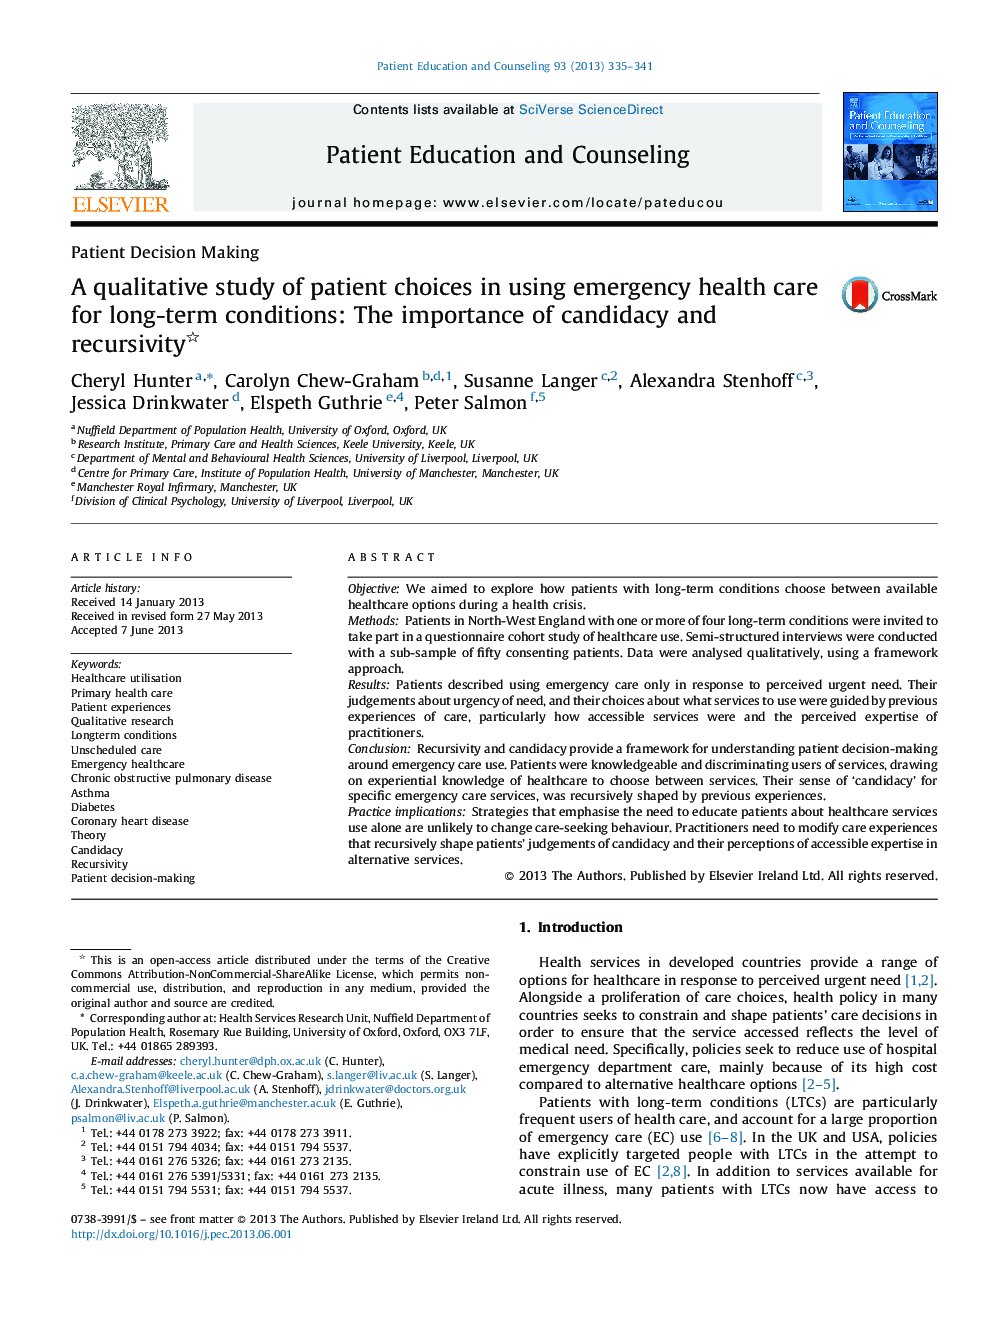 یک مطالعه کیفی در مورد انتخاب بیمار در استفاده از مراقبت های بهداشتی اورژانس برای شرایط دراز مدت: اهمیت نامزدی و بازگشتی 